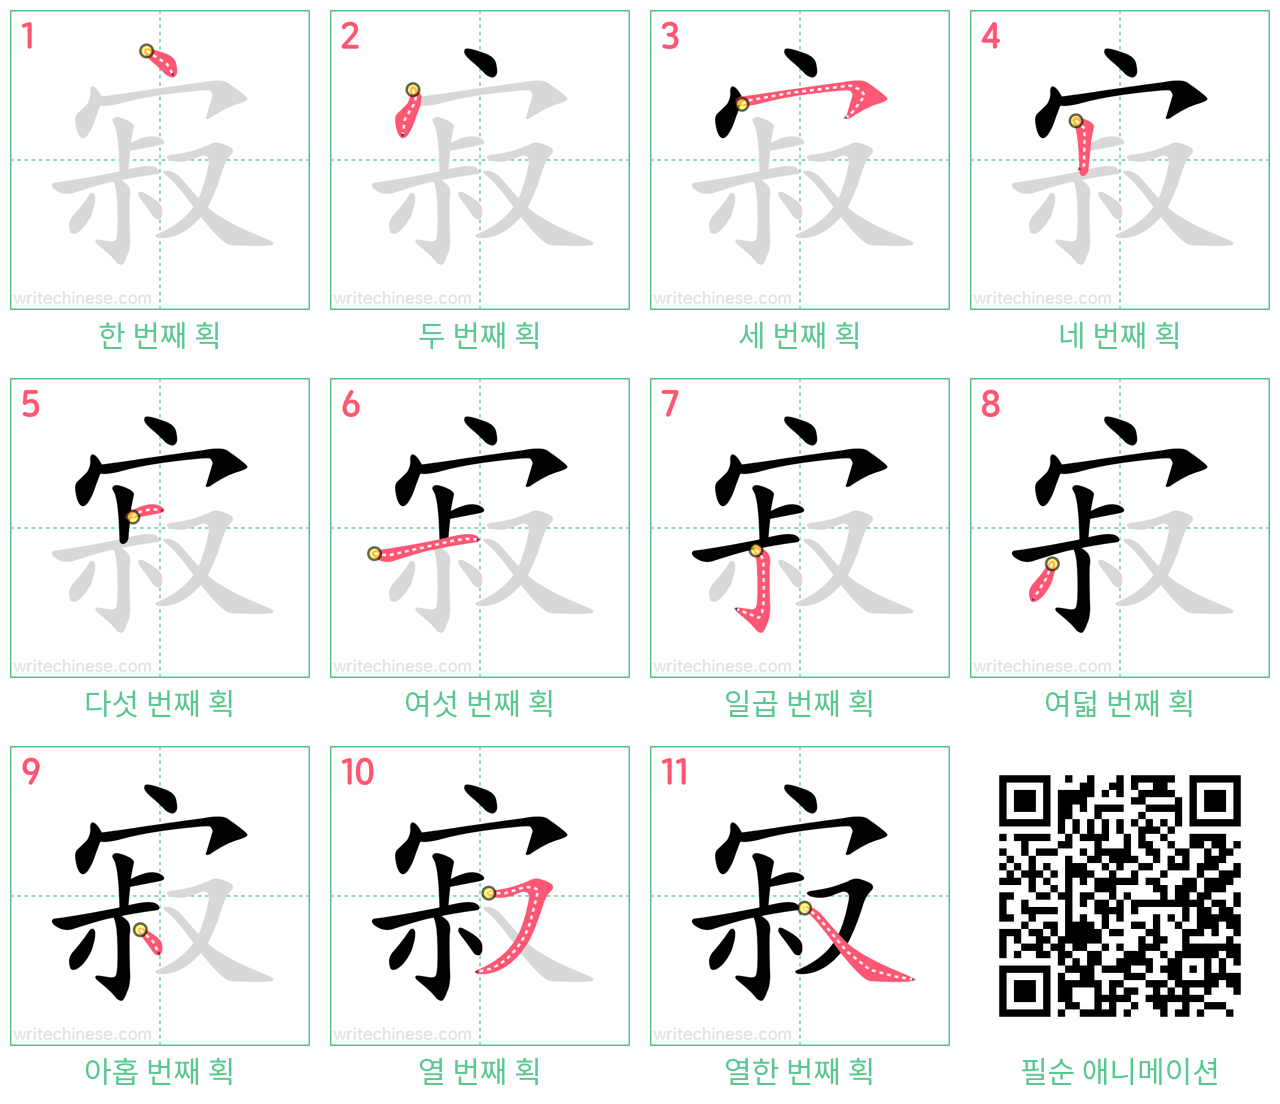 寂 step-by-step stroke order diagrams